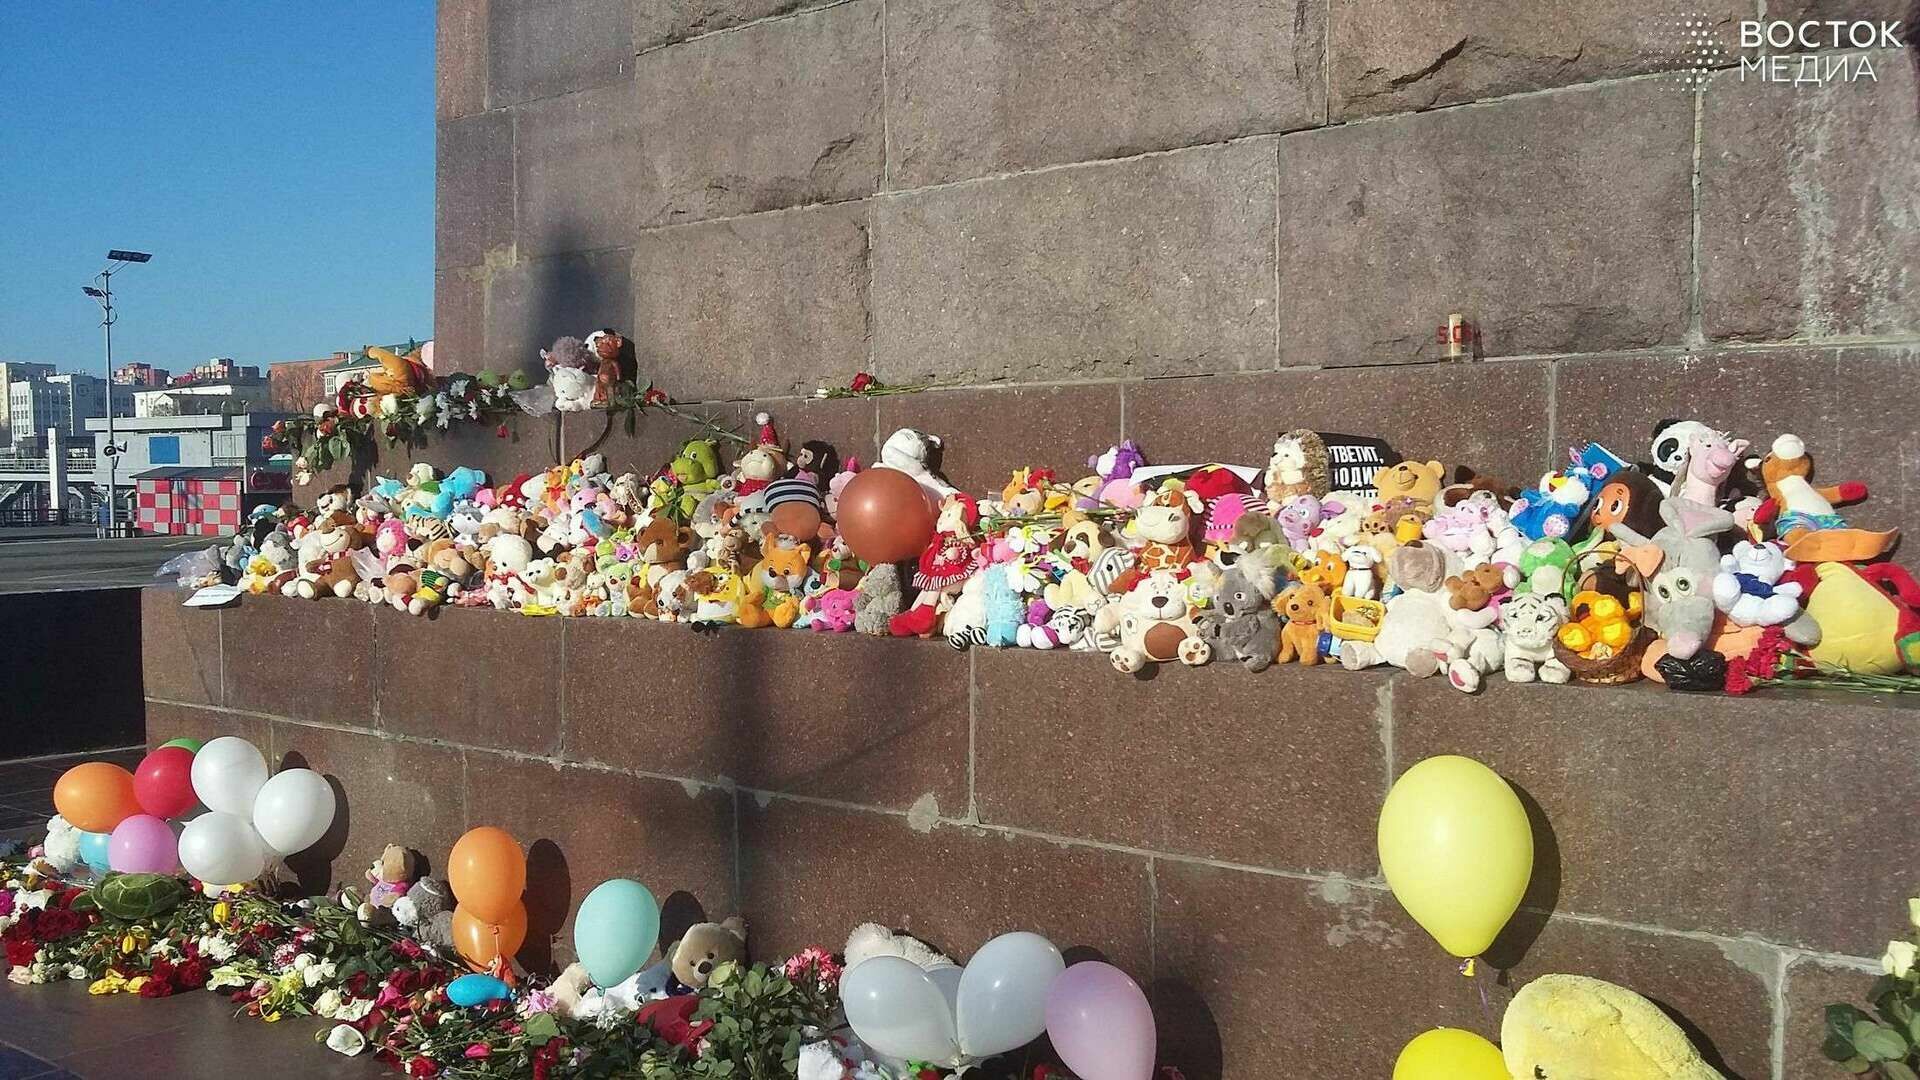 Мэрия Владивостока не знает, что делать с оставленными на месте скорби игрушками